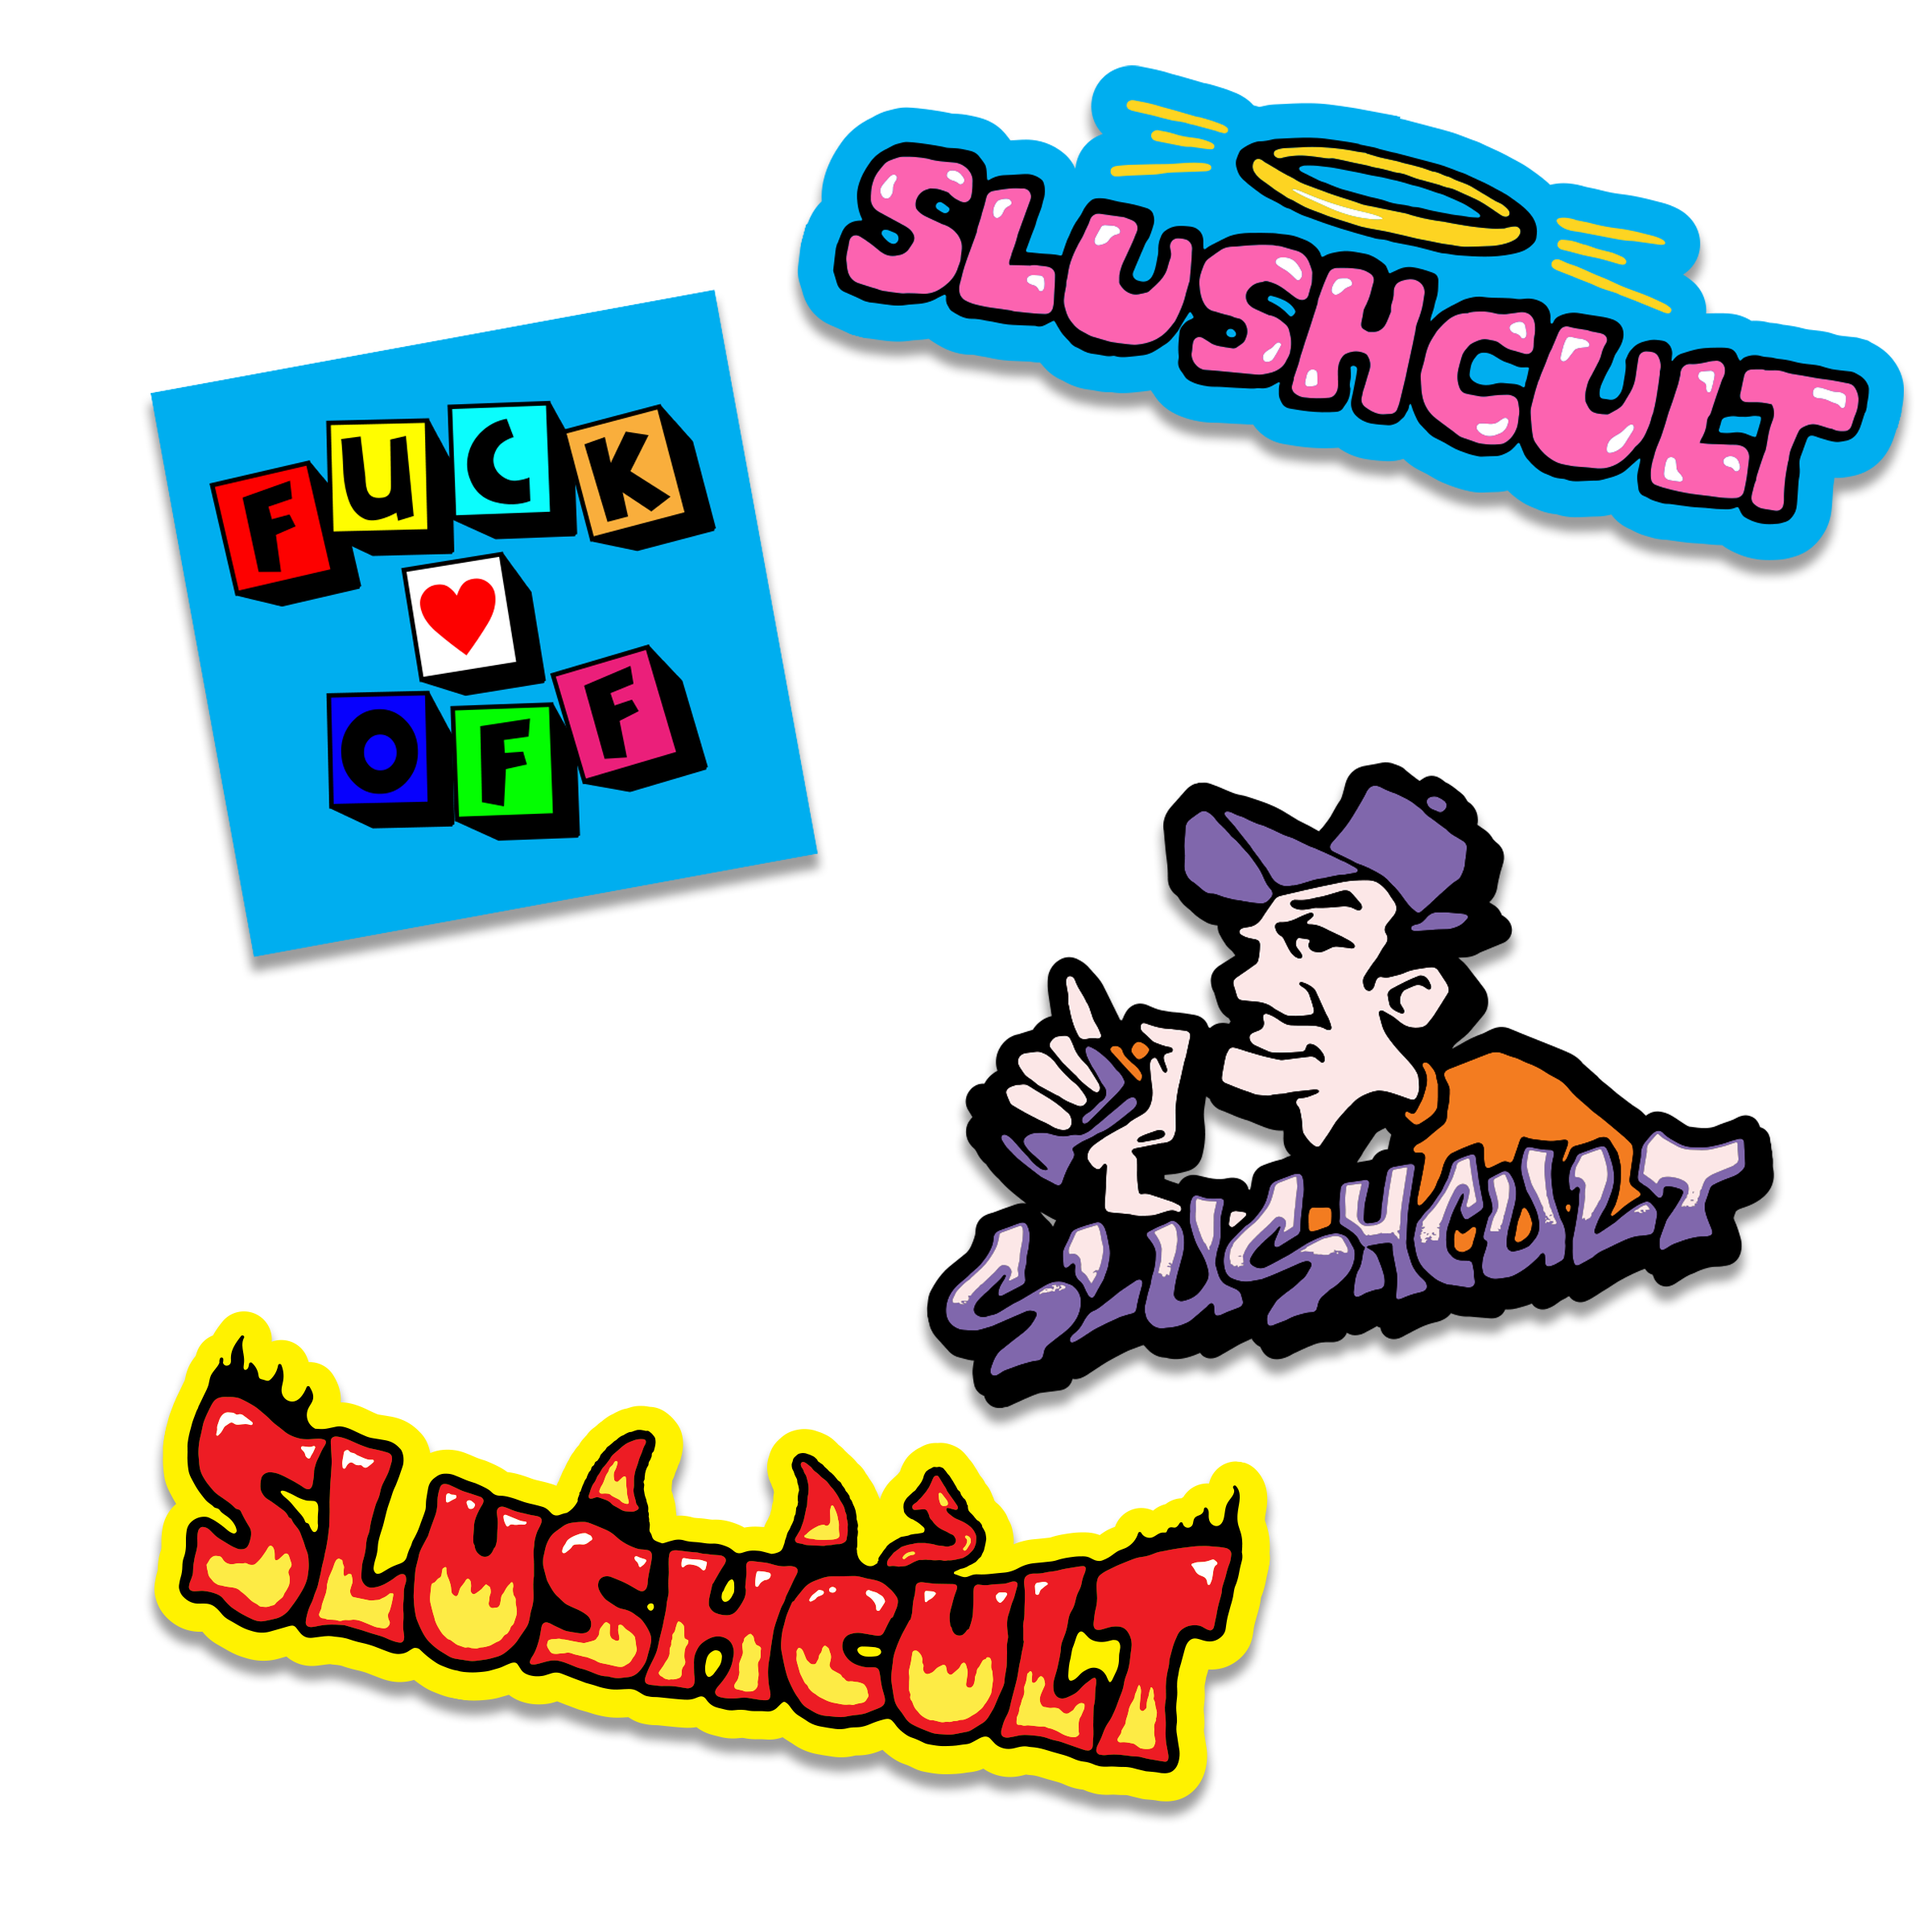 New School Sticker Pack Accessories Slushcult    Slushcult